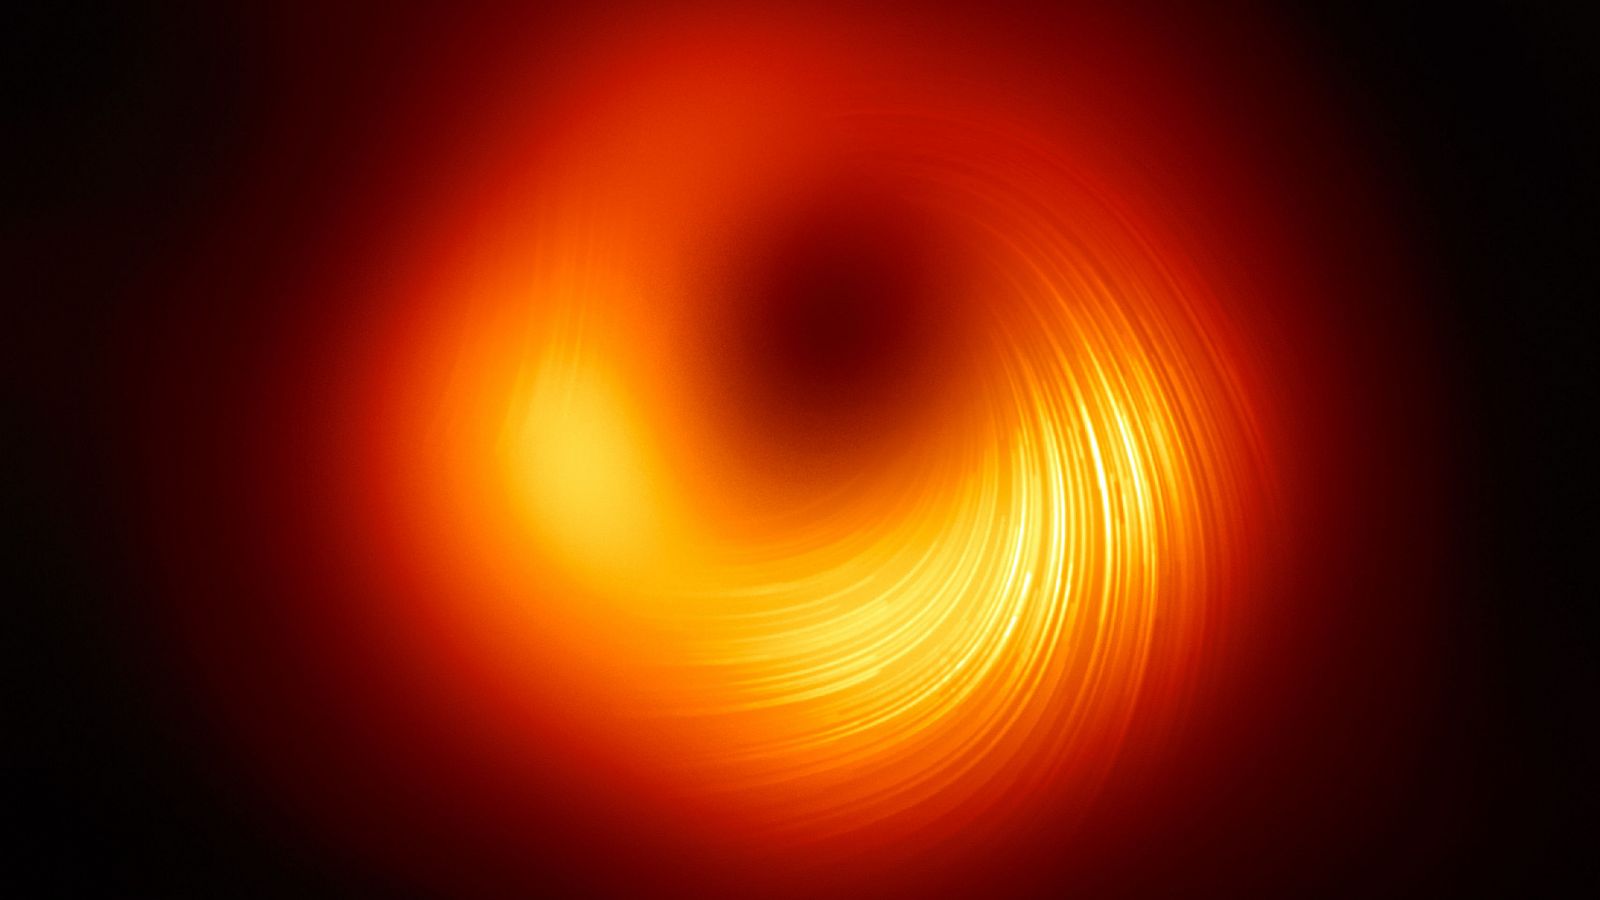 El Event Horizon Telescope ha presentado una imagen actualizada del agujero negro de la galaxia M87.